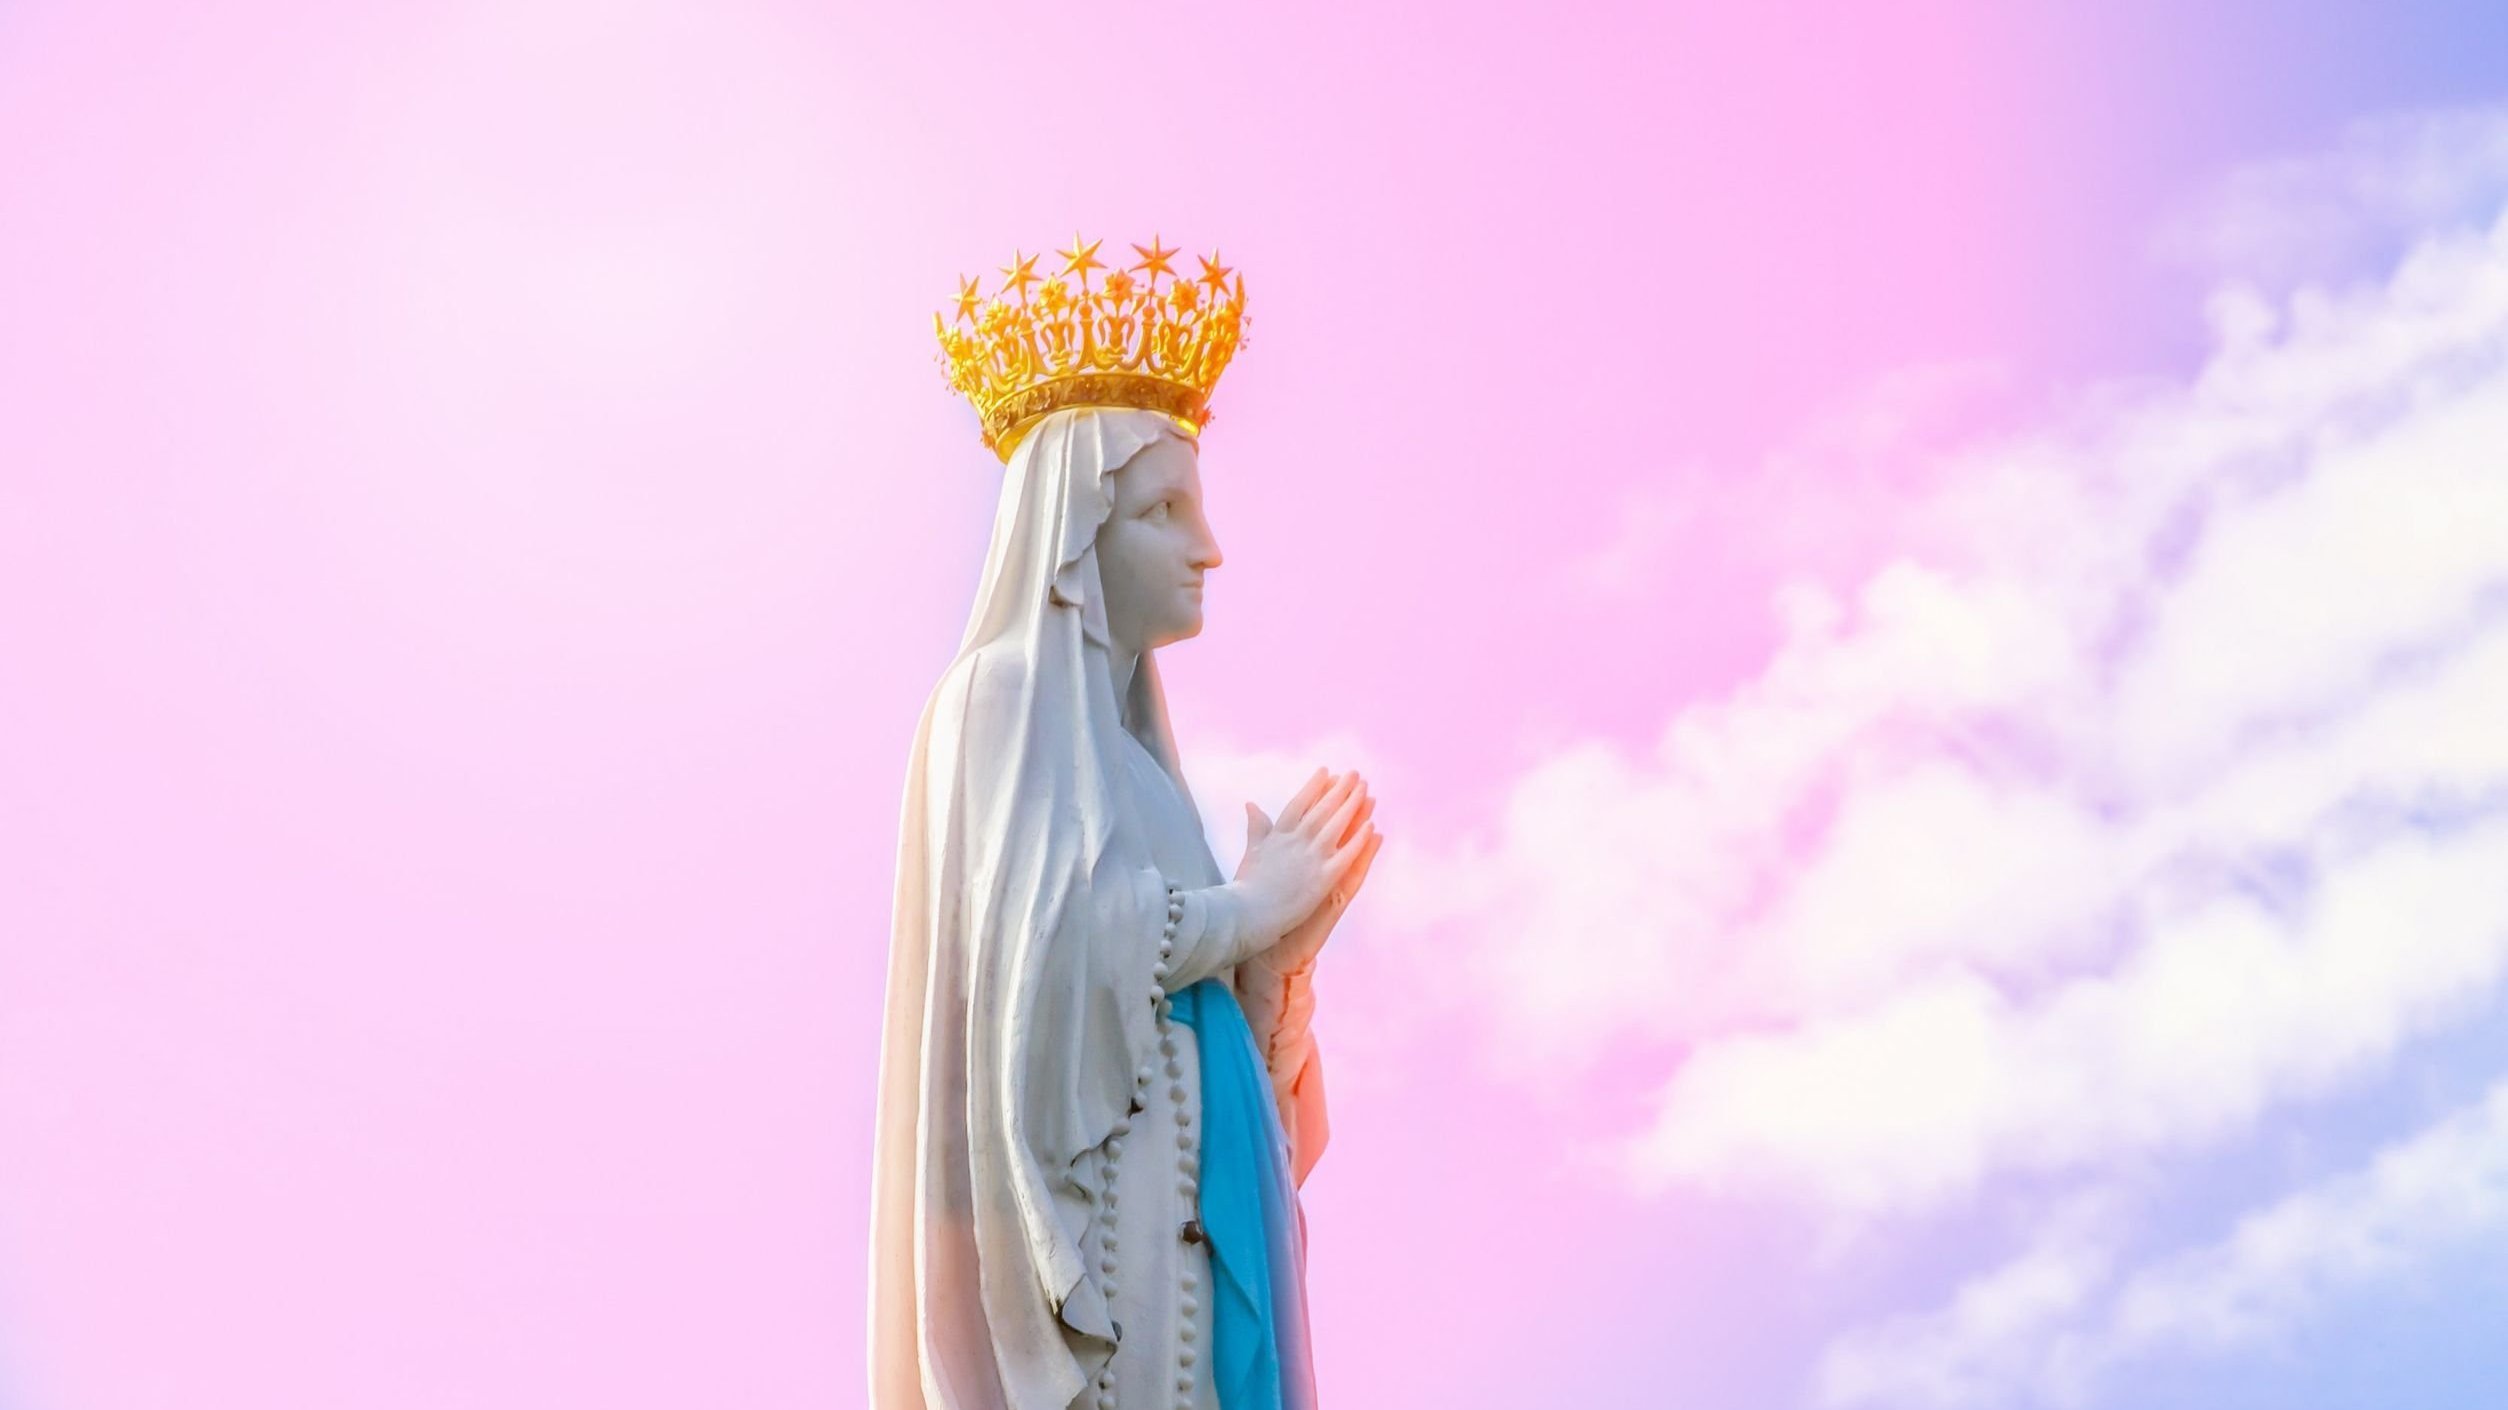 Estátua de virgem Maria de mão unidas, usando coroa. Ao fundo há um céu azul com tons de rosa.